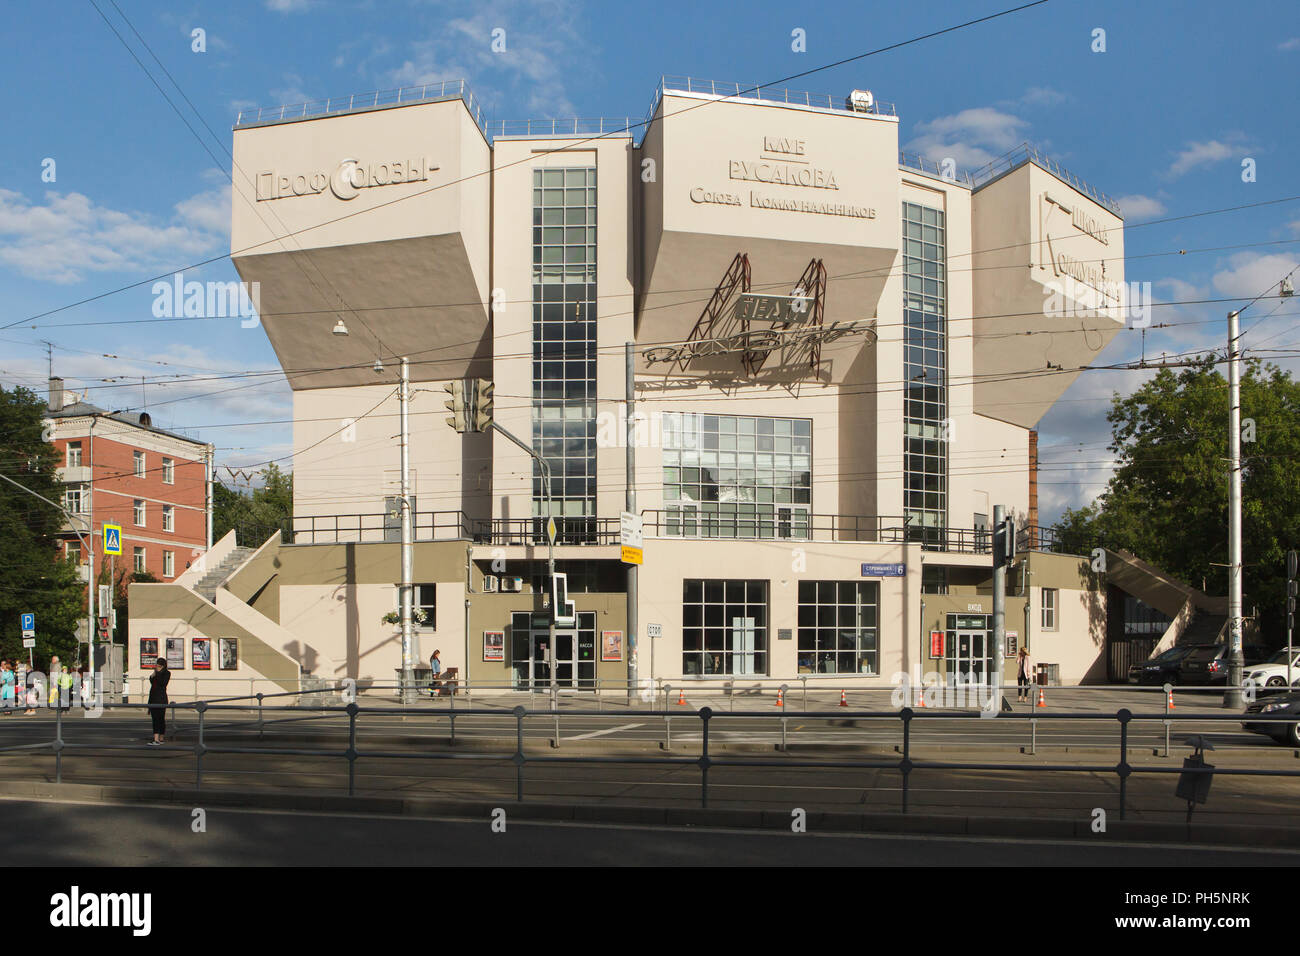 Des travailleurs Rusakov Club conçu par l'architecte constructiviste soviétique Constantin Melnikov et construit en 1927-1928 dans la région de Moscou, Russie. Le bâtiment constructiviste notable est maintenant situé le Roman Viktyuk Theatre. Banque D'Images